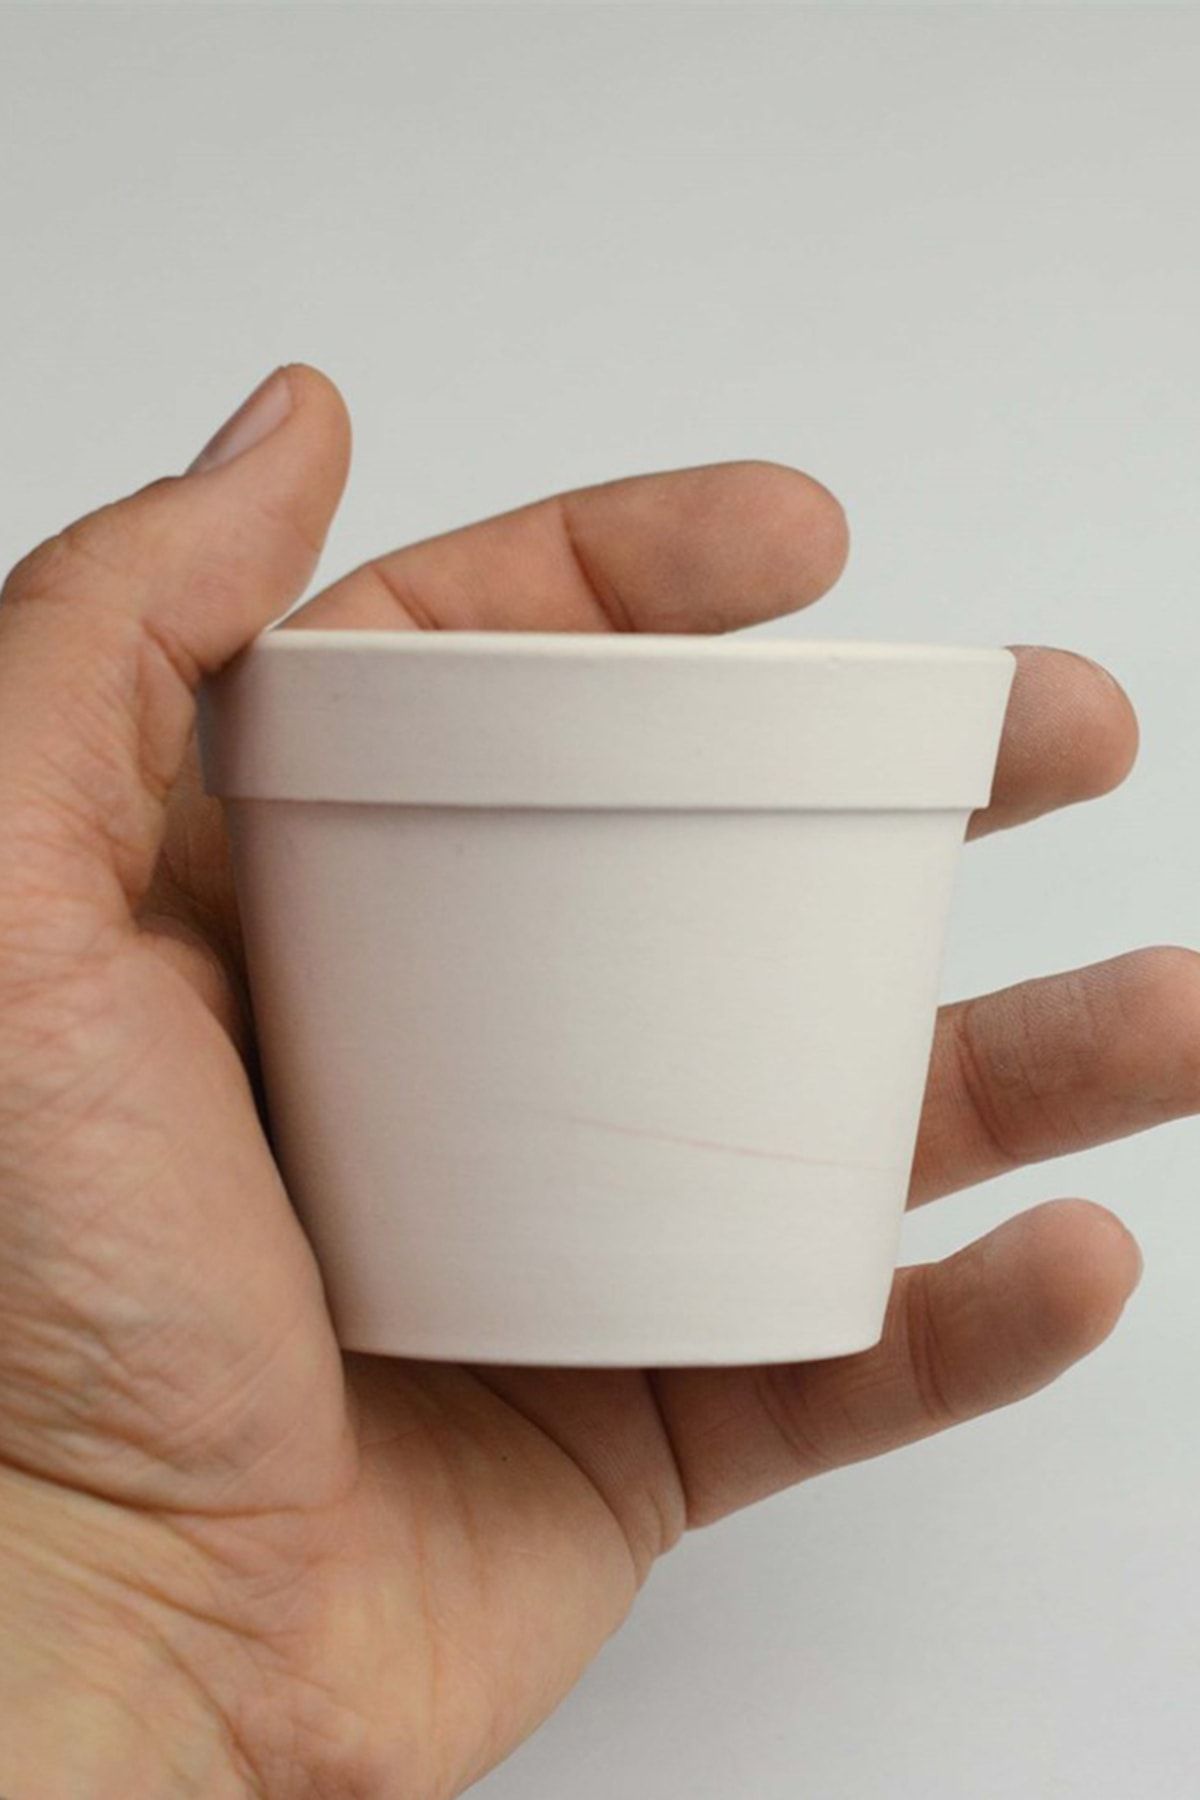 Refsan Minyatür Mini Saksı | Seramik Bisküvi - 8 Cm (HAM ÜRÜN)